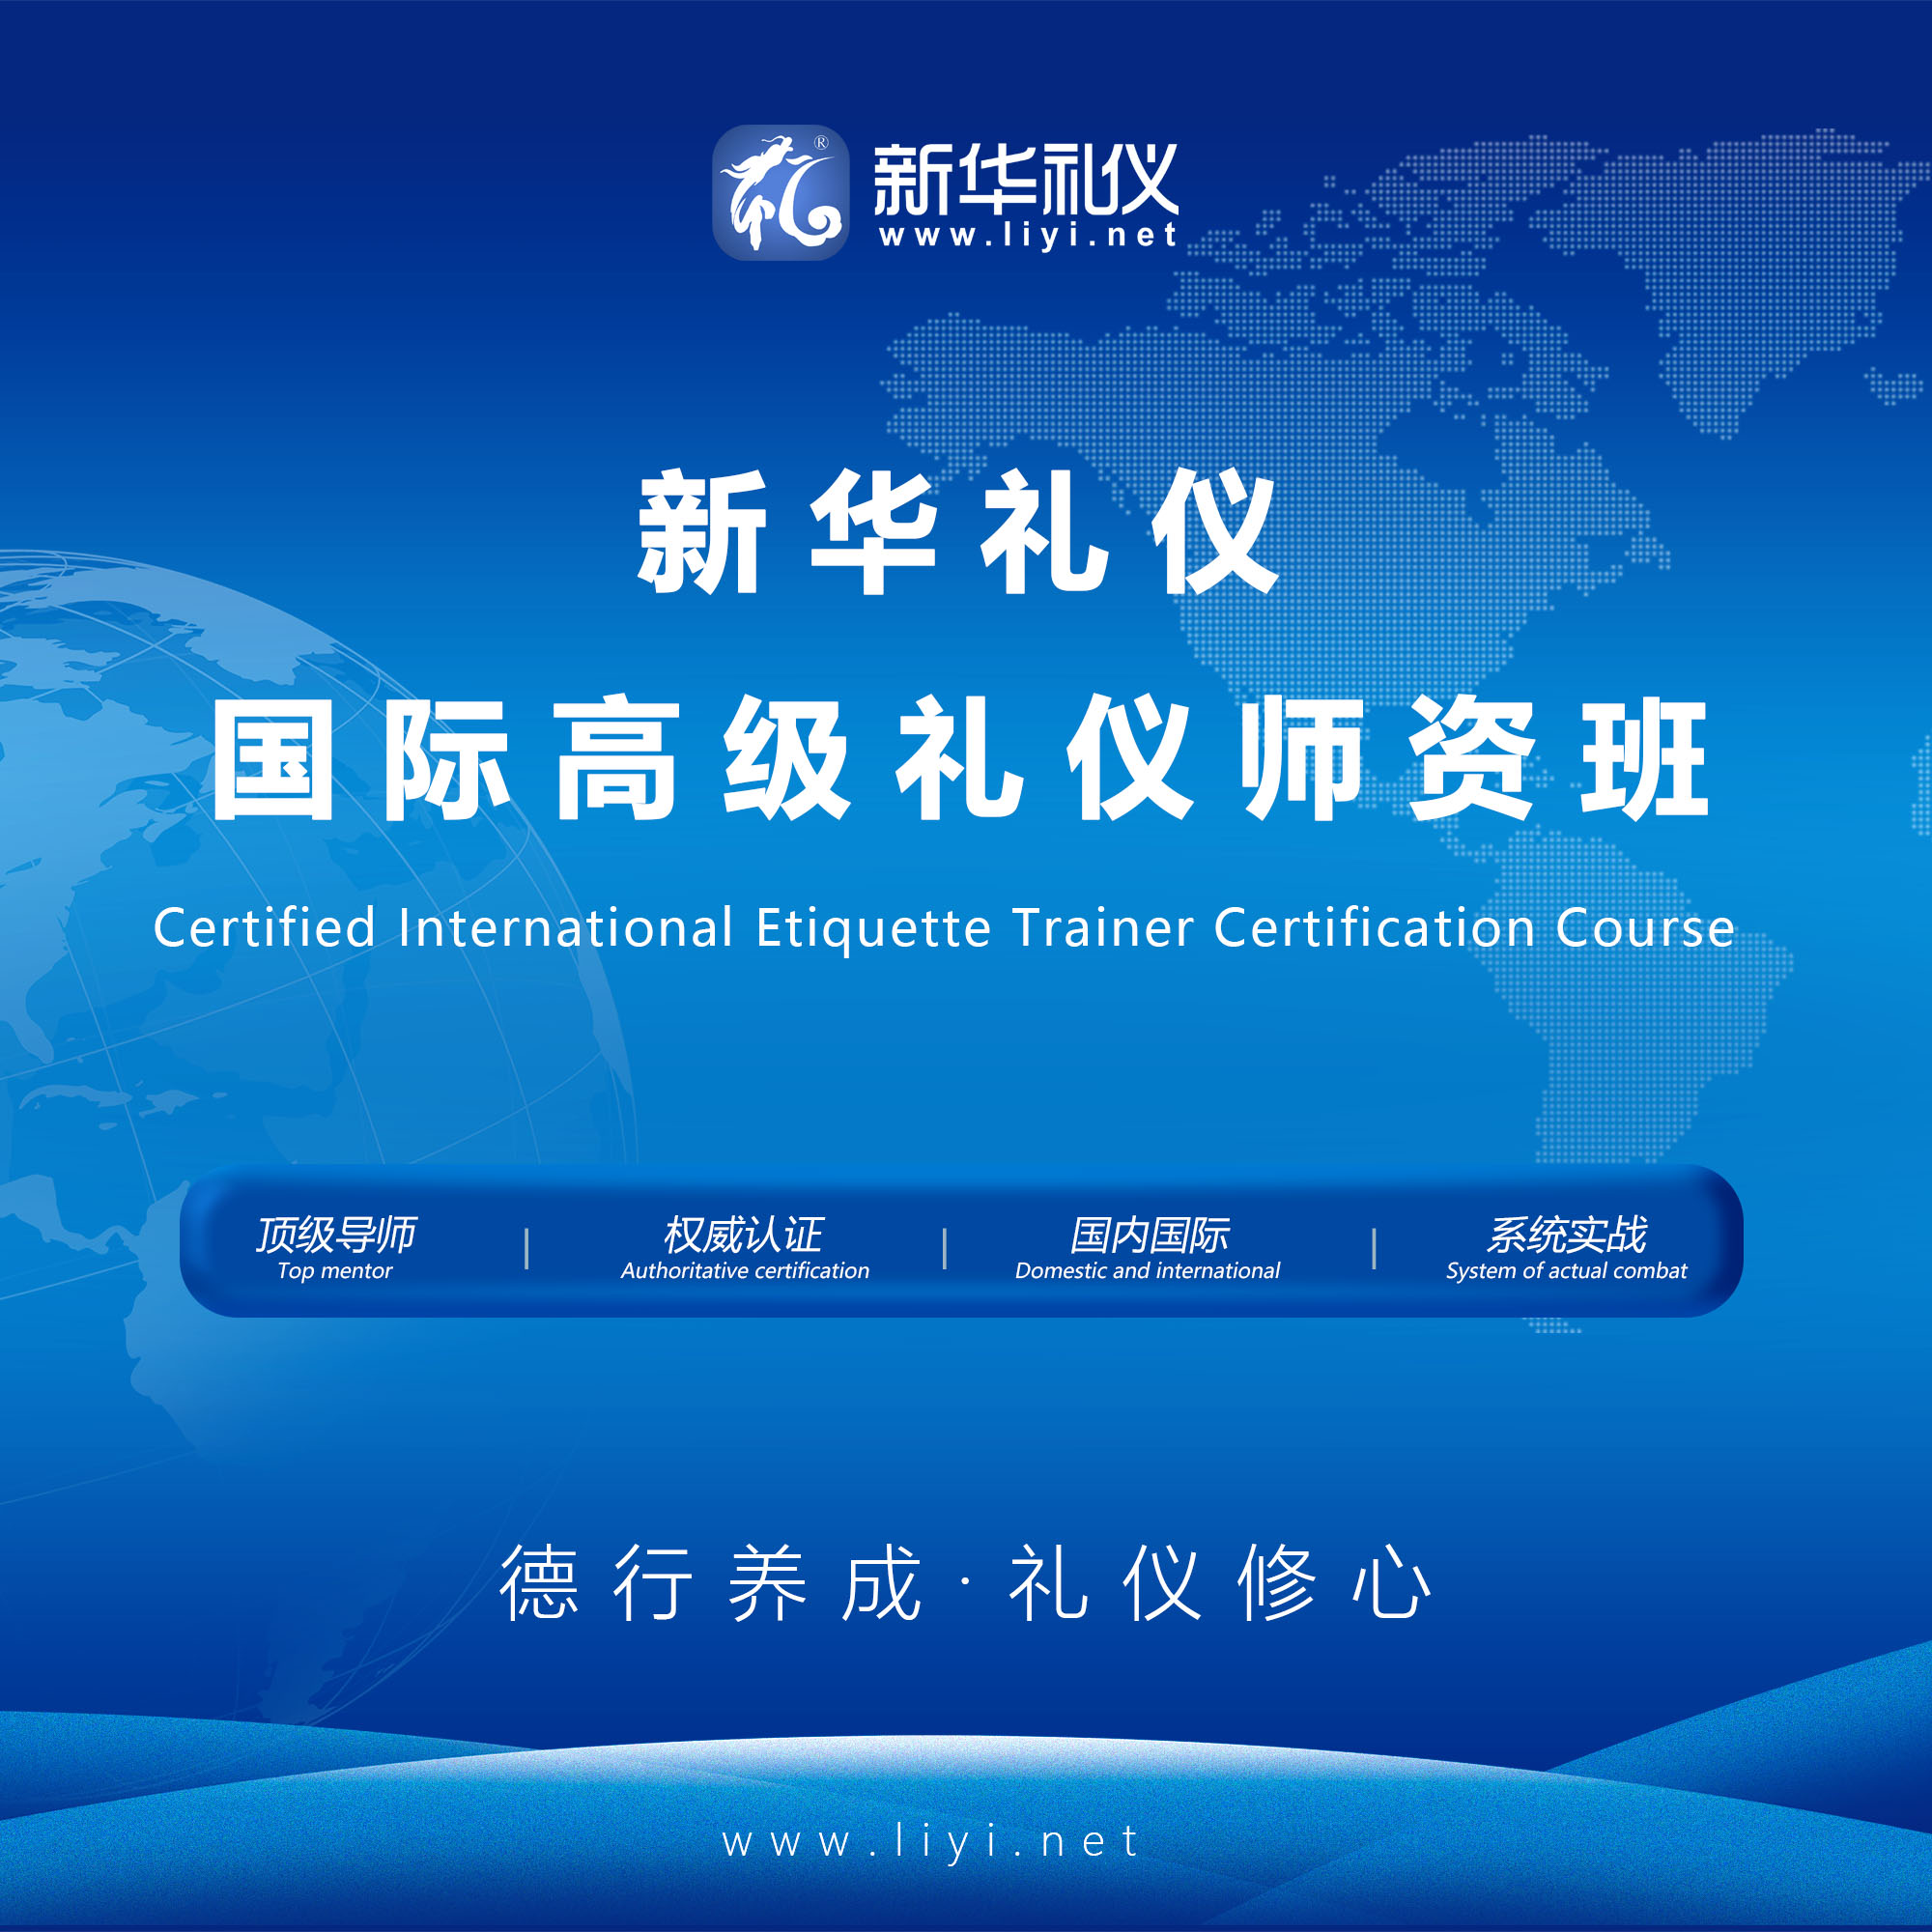 西城2020年6月25日·上海·新华礼伊《国际注册高级礼仪培训师认证班》